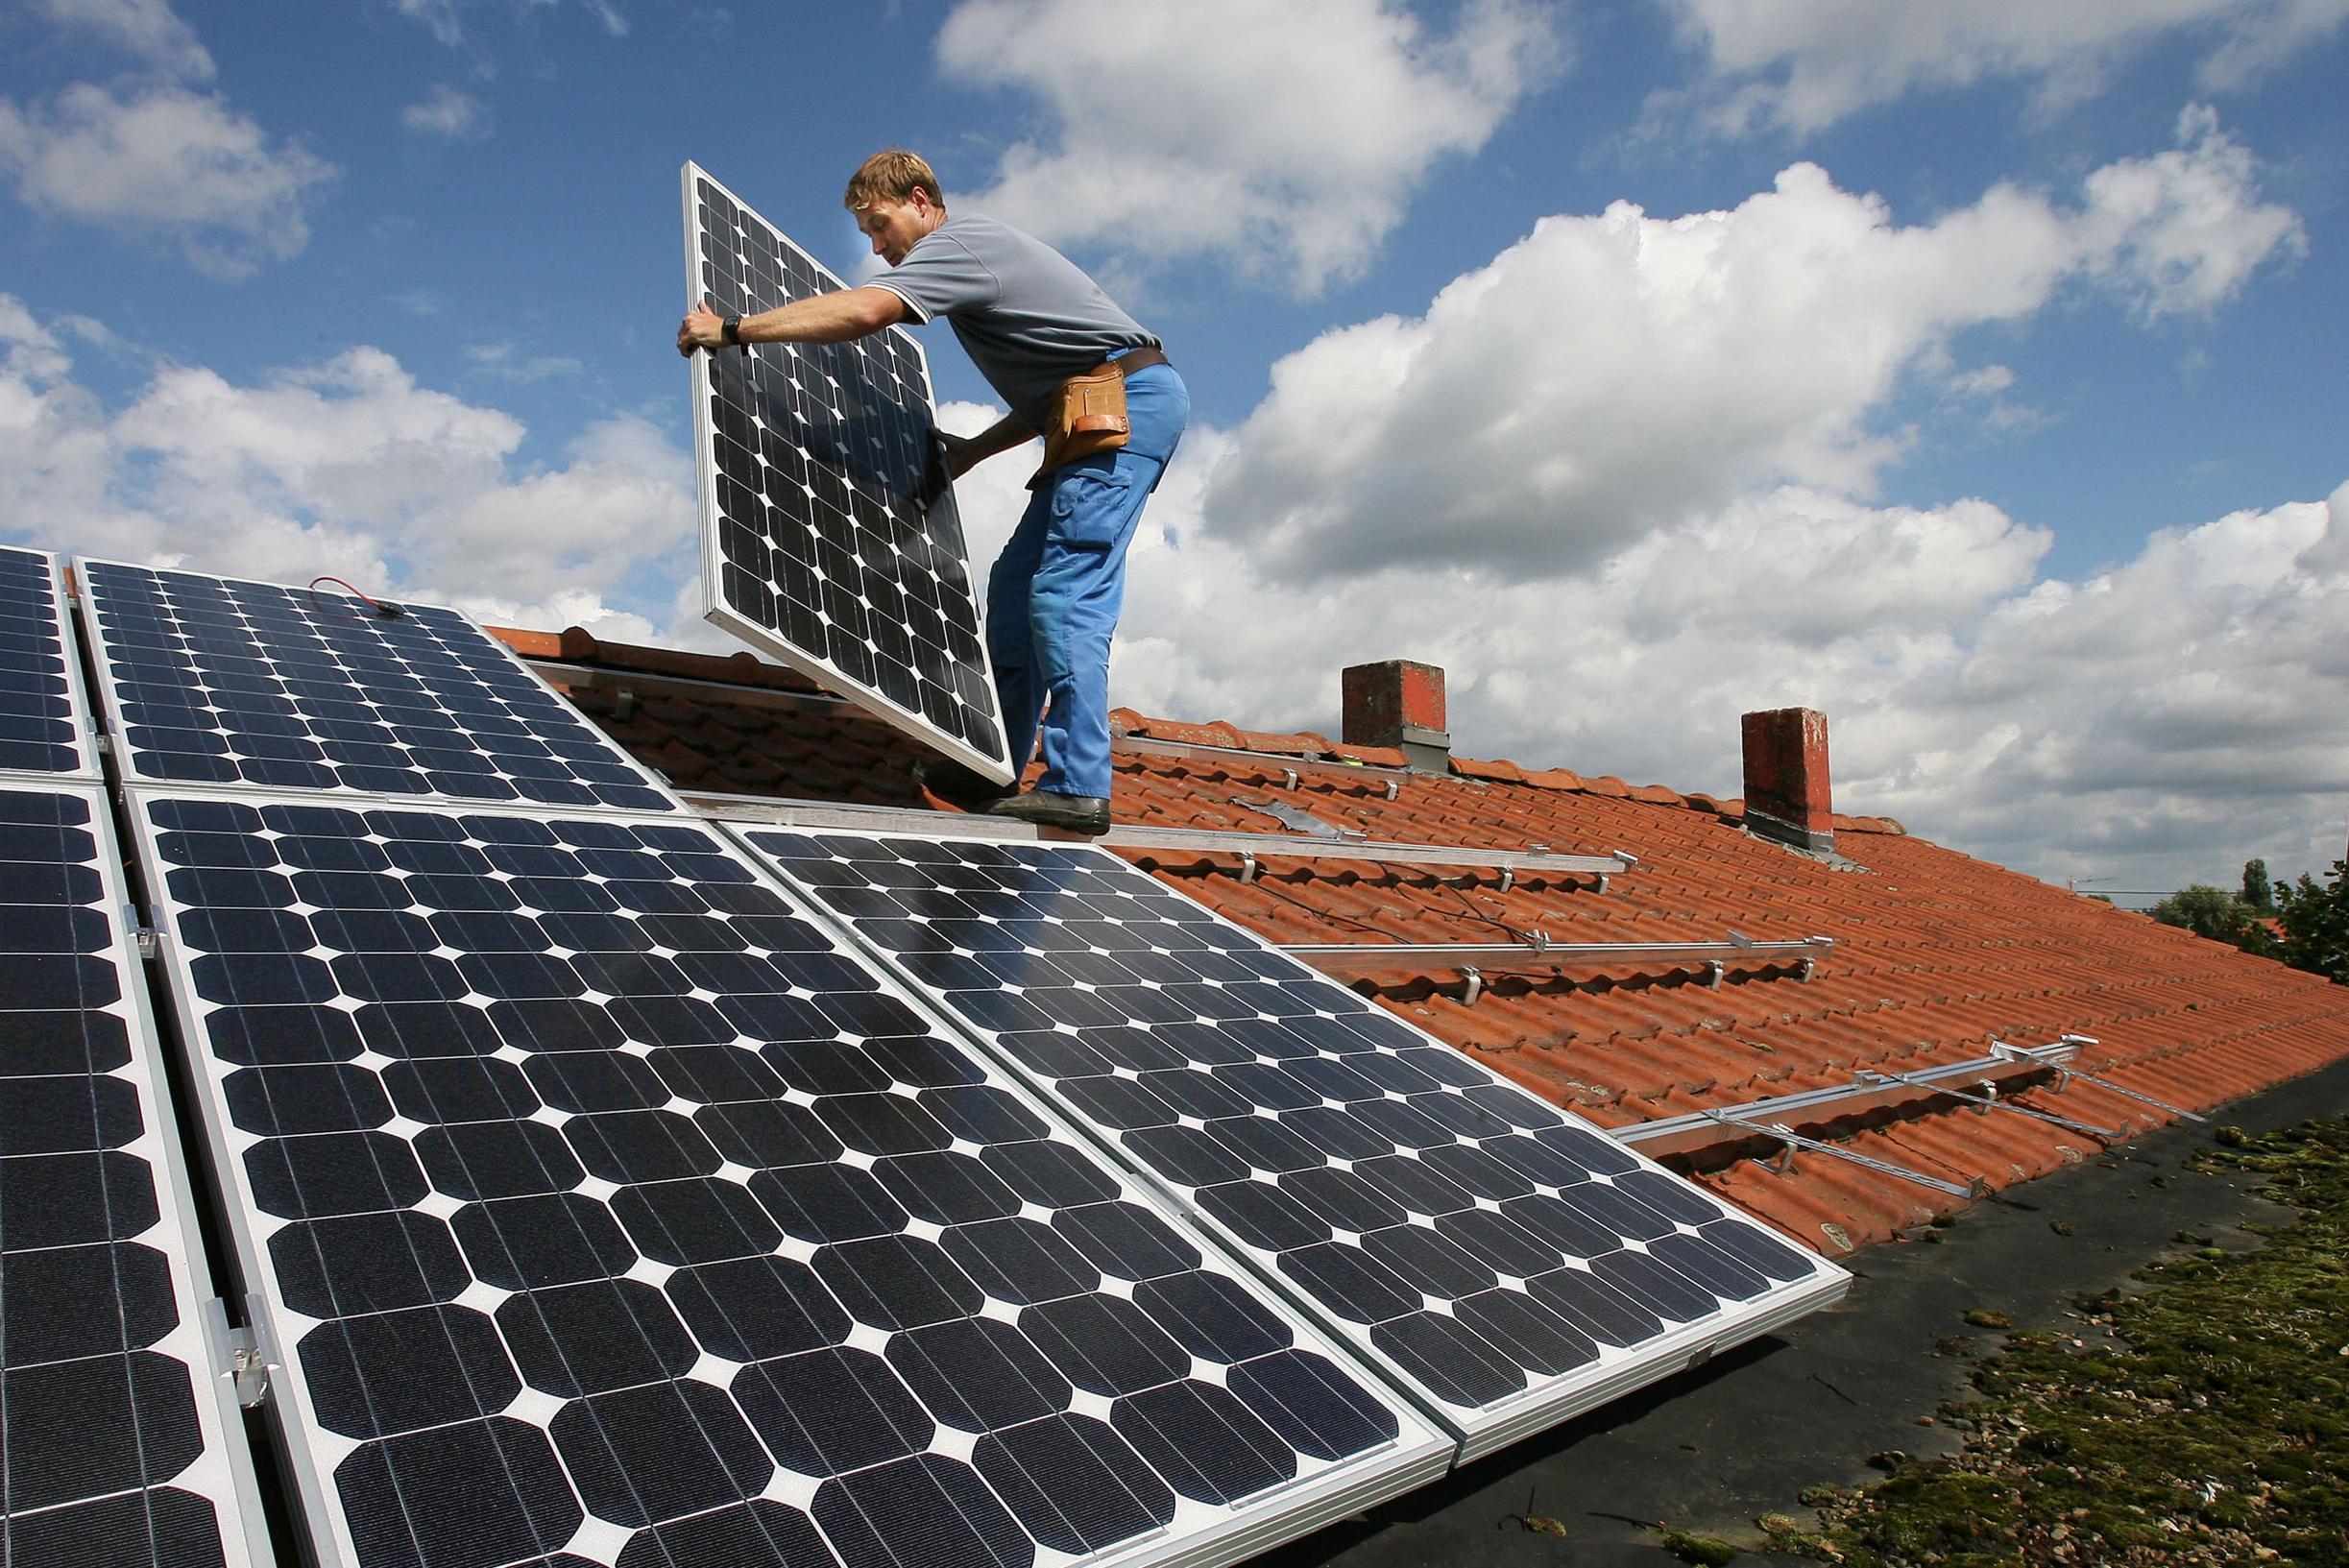 Heer wees onder de indruk als 2.000 bedrijven dreigen subsidies voor zonnepanelen te verliezen, gezinnen  delen in klappen | Het Nieuwsblad Mobile